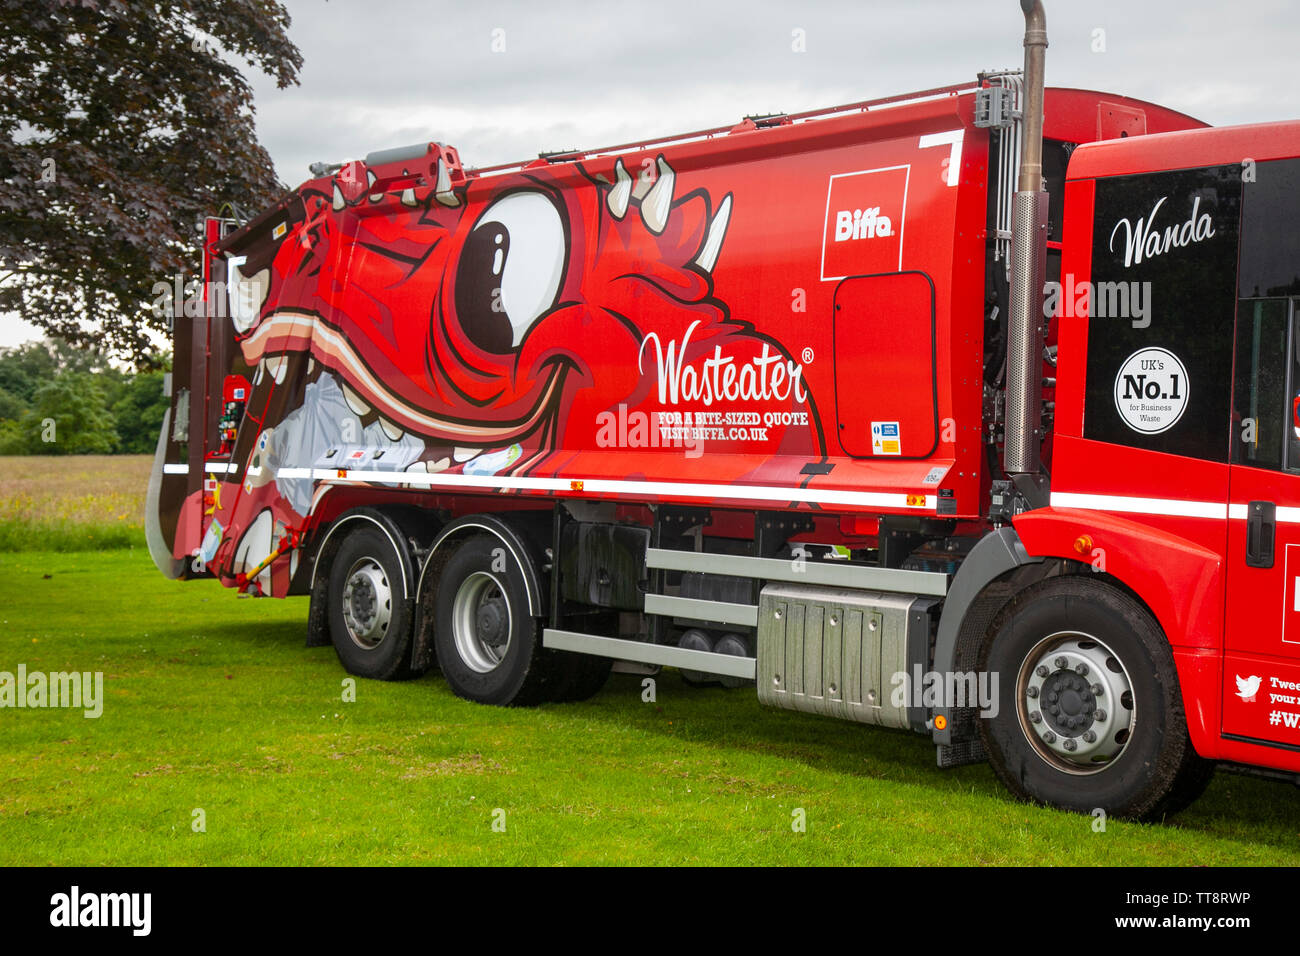 Waste-eater Biffa, gestione e riciclaggio dei rifiuti, camion per la raccolta dei rifiuti, Leyland, Regno Unito Foto Stock